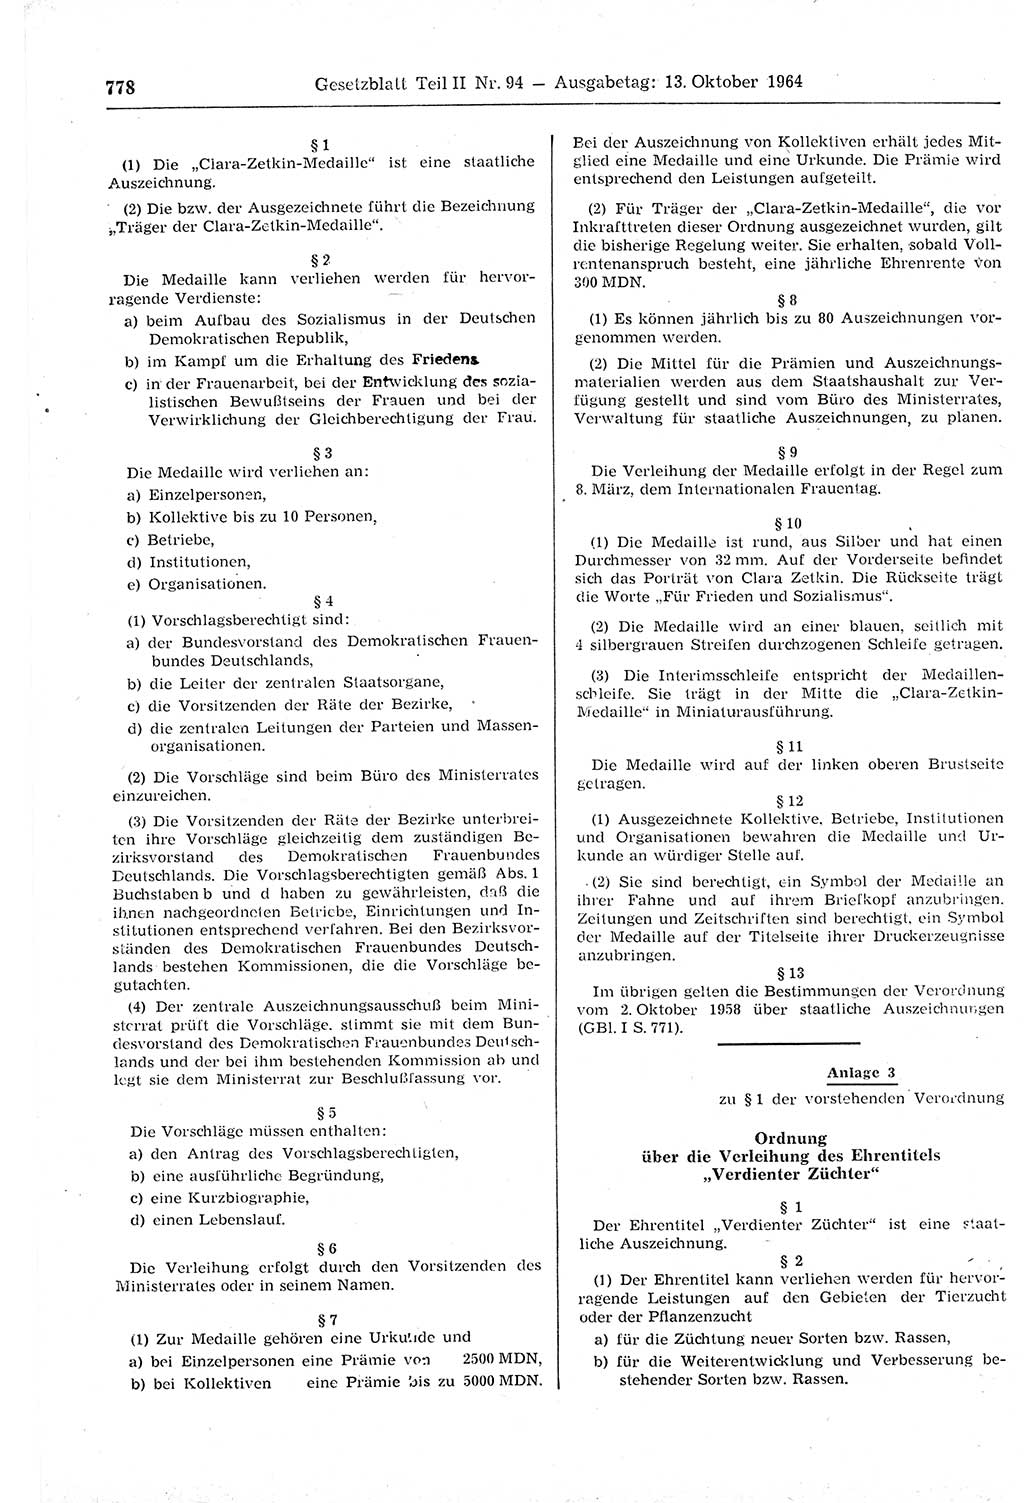 Gesetzblatt (GBl.) der Deutschen Demokratischen Republik (DDR) Teil ⅠⅠ 1964, Seite 778 (GBl. DDR ⅠⅠ 1964, S. 778)